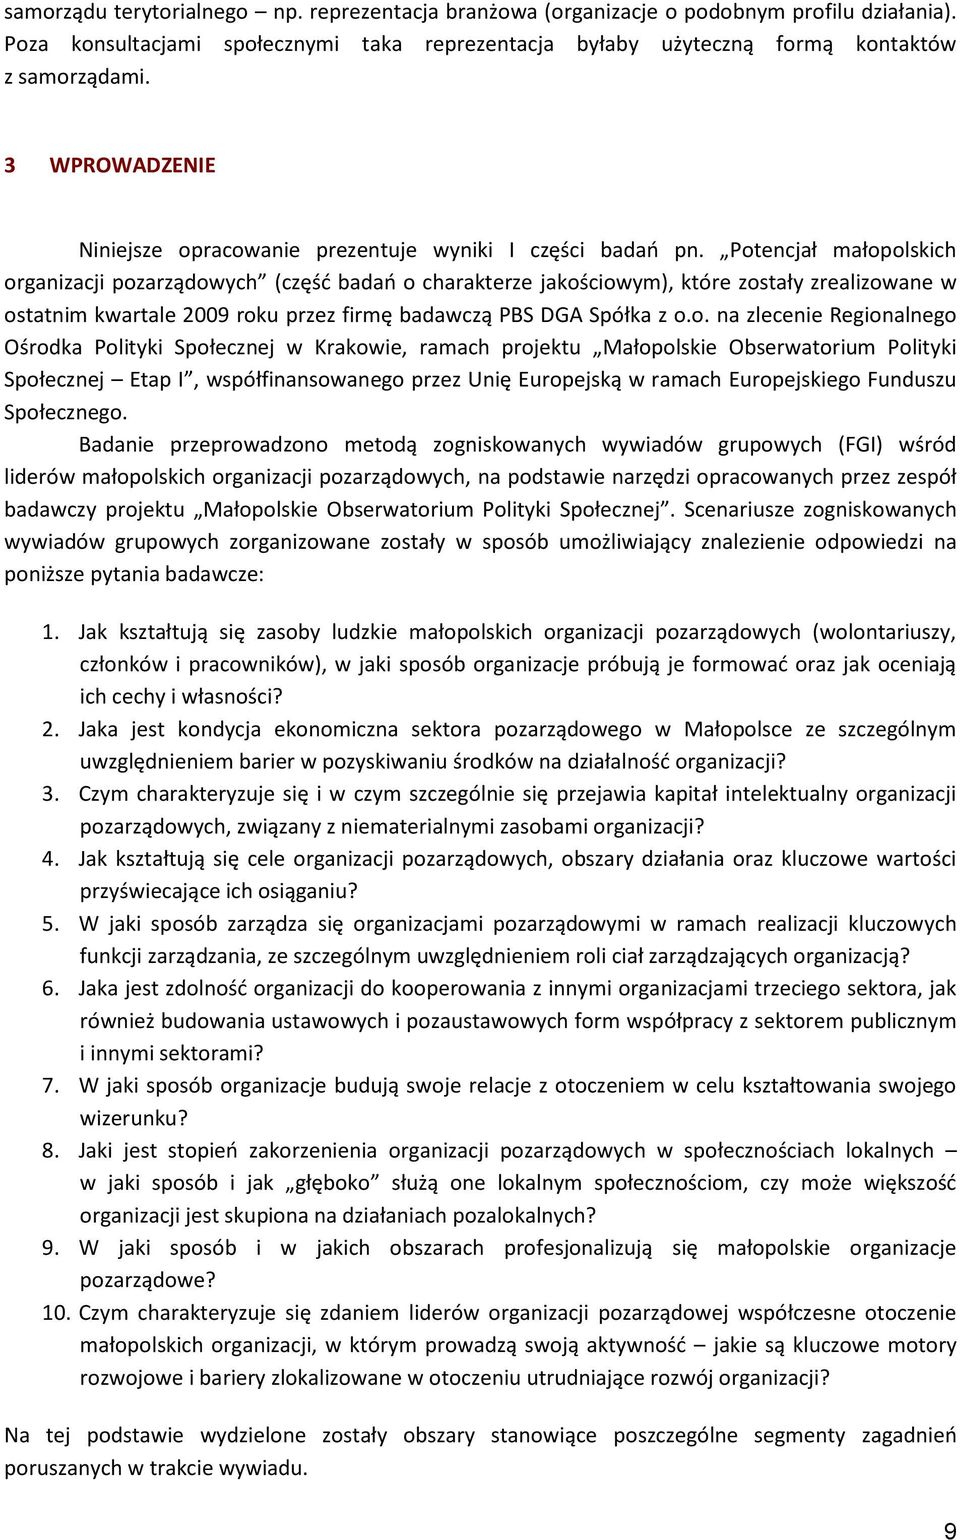 Potencjał małopolskich organizacji pozarządowych (częśd badao o charakterze jakościowym), które zostały zrealizowane w ostatnim kwartale 2009 roku przez firmę badawczą PBS DGA Spółka z o.o. na